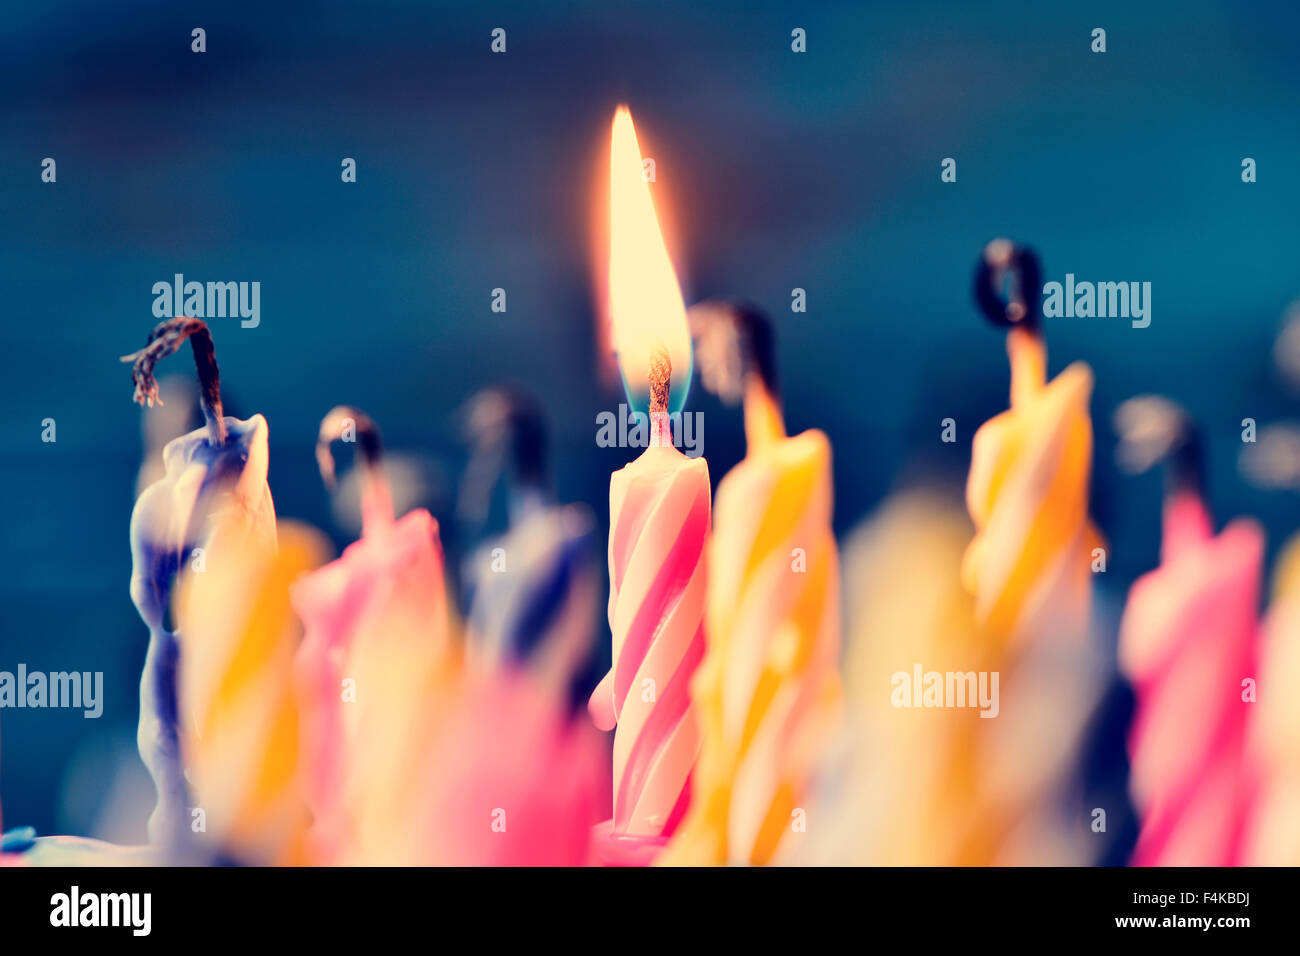 Nahaufnahme von einigen unbeleuchtet Kerzen und nur eine brennende Kerze nach dem Kuchen Ausblasen Stockfoto